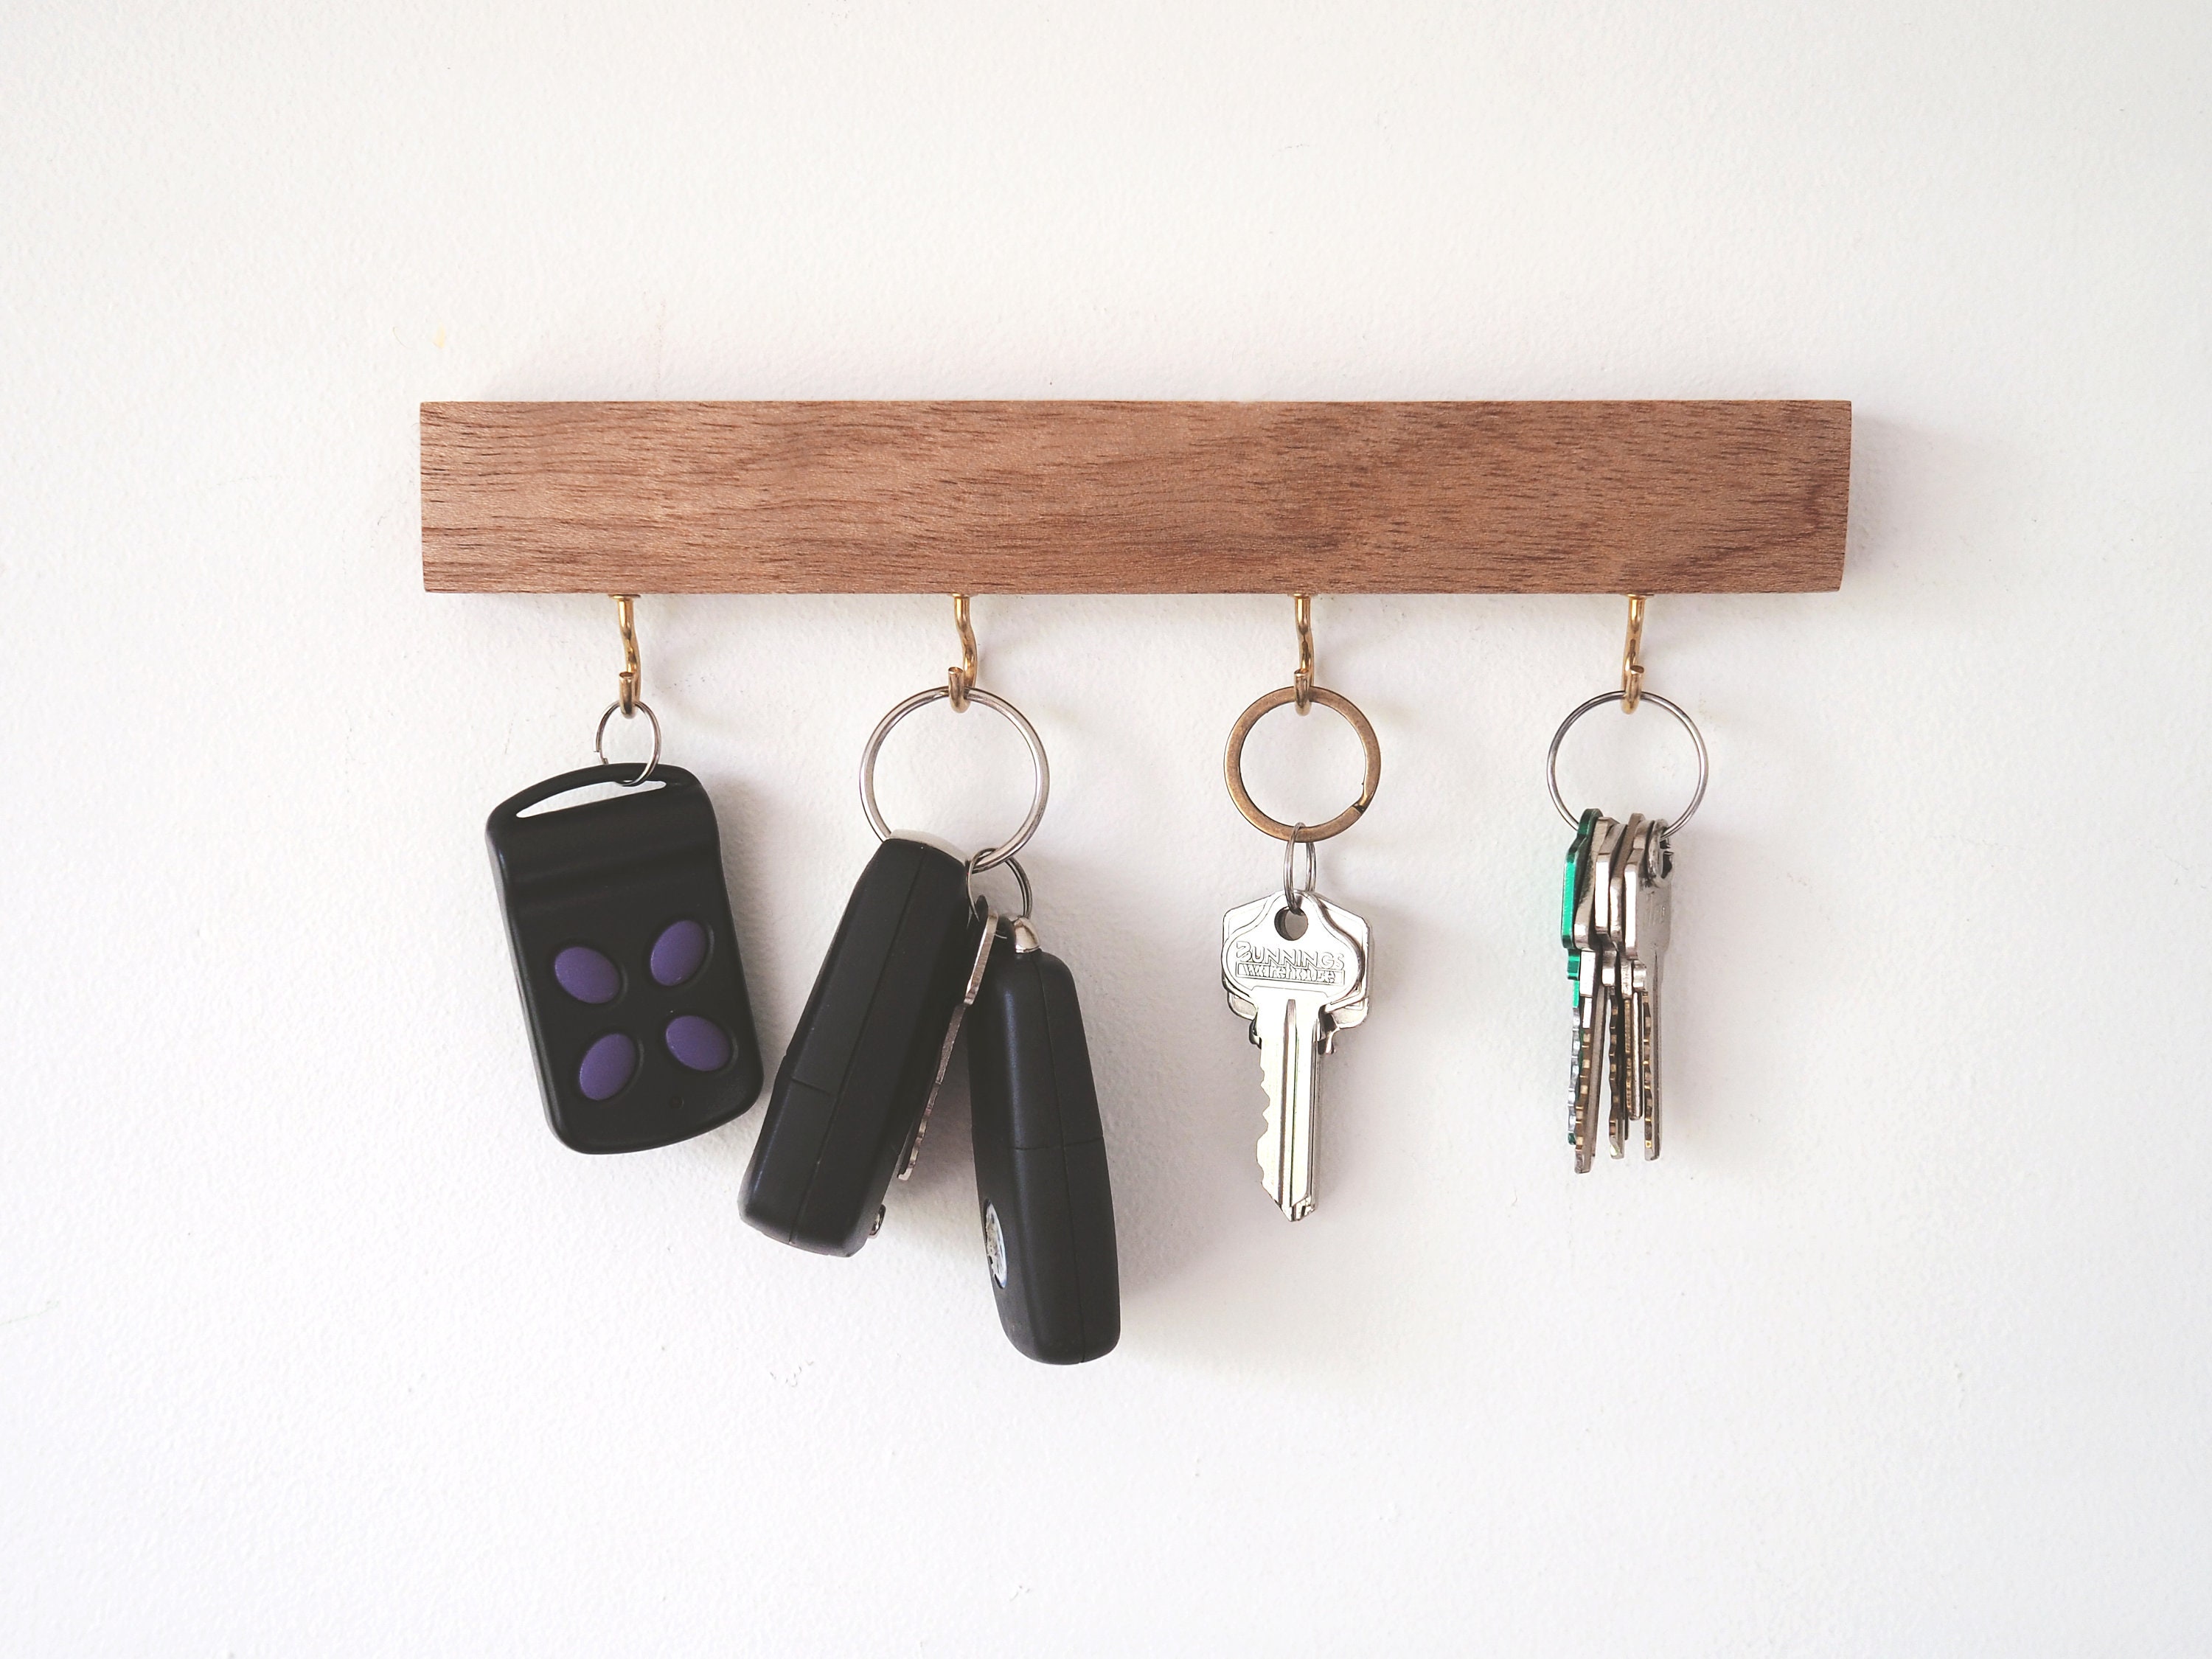 Haken Schlüsselhalter für Wand Vatertagsgeschenk, Schlüsselablage,  Geschenk, Wandschlüsselhalter, Schlüsselablage, Schlüsselaufhänger,  Eingangsorganisator, Schlüsselaufbewahrung - .de